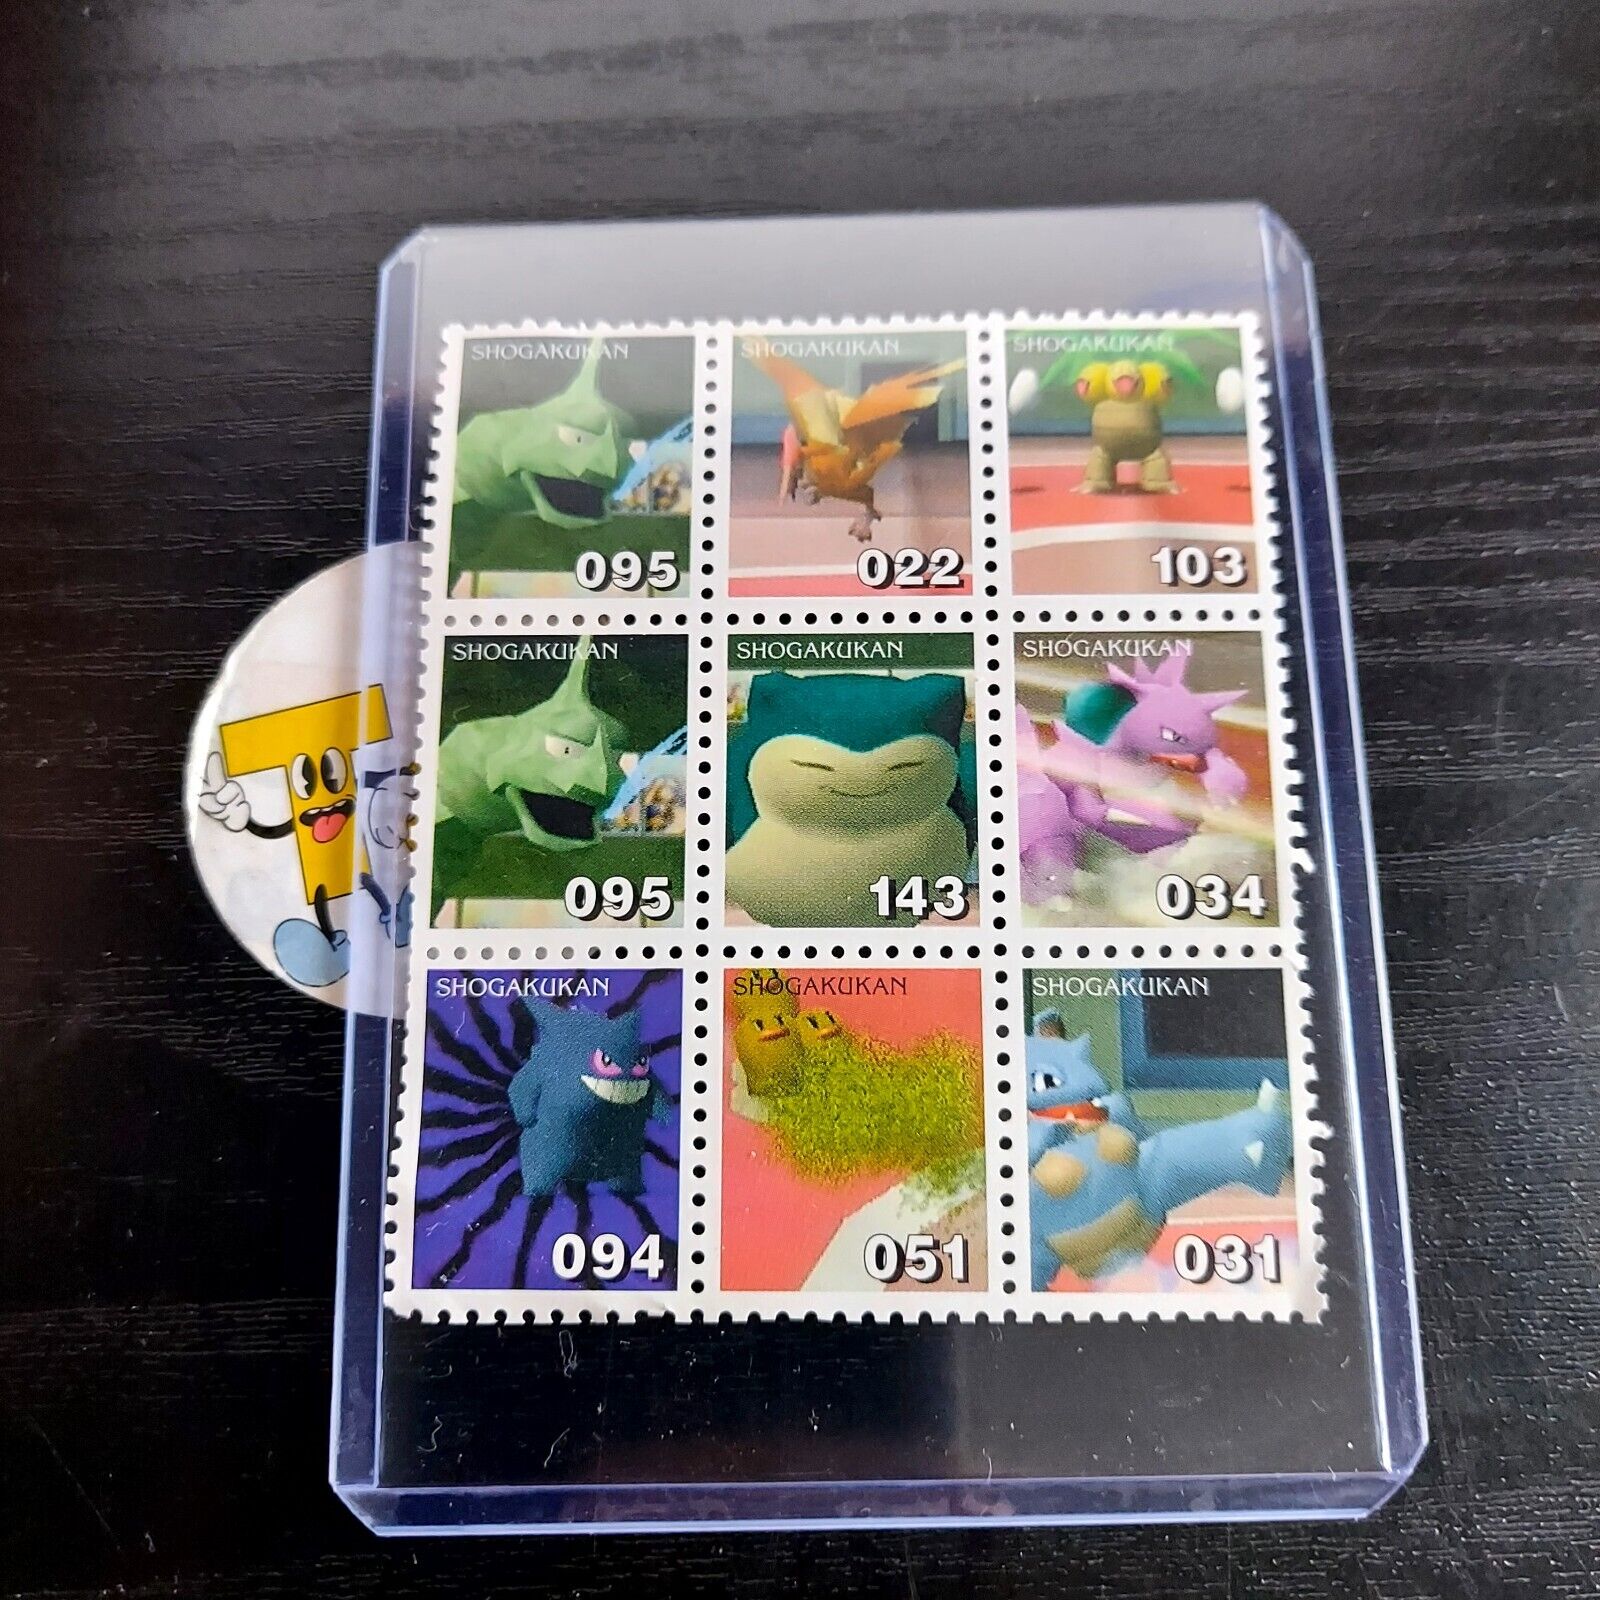 1998 Pokemon Staduim Gengar Shogakukan Stamps uncut sheet base set collection